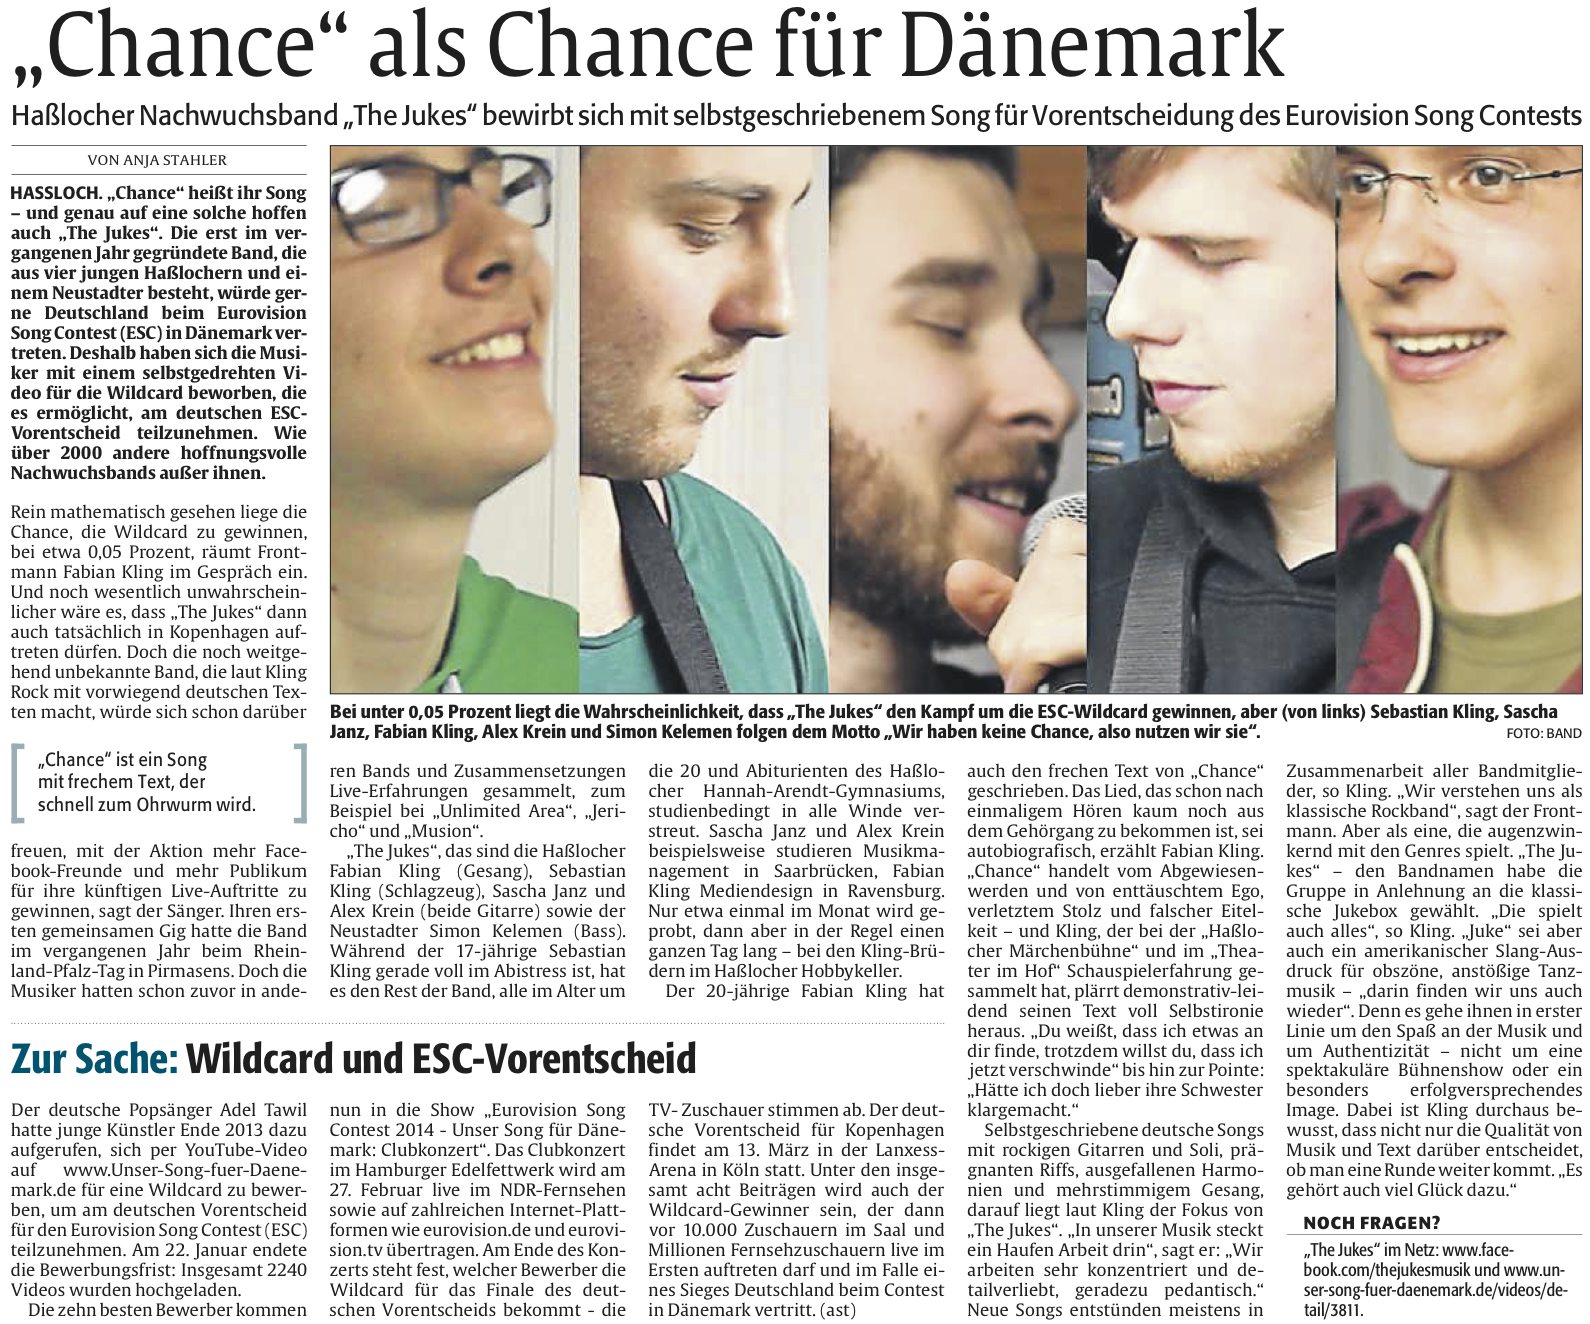 "Chance" ala Chance für Dänemark